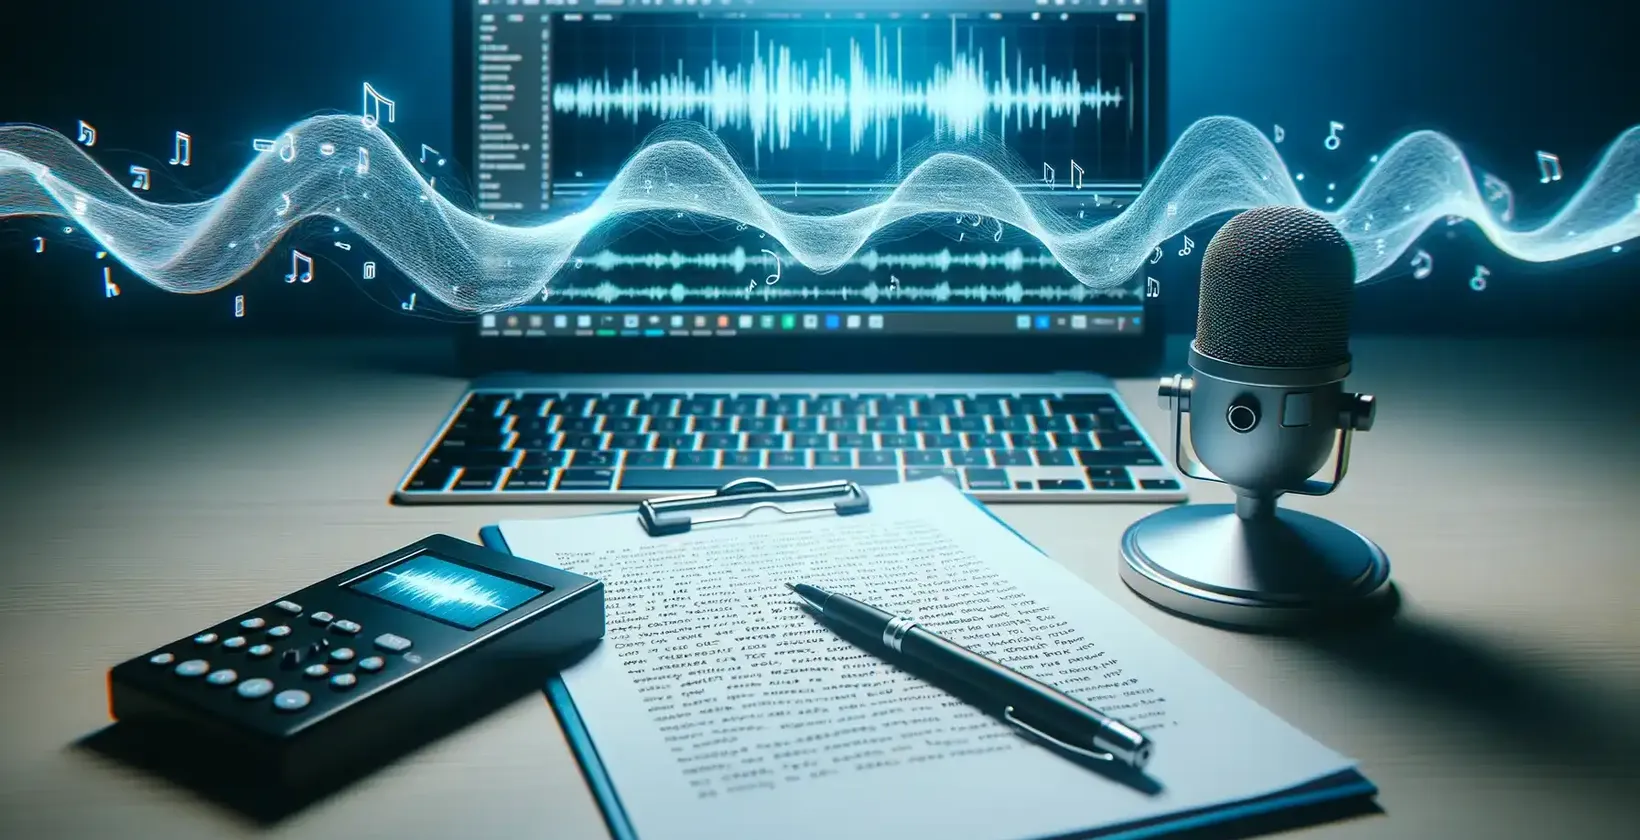 Meja dengan peralatan perekaman audio, mikrofon, buku catatan, dan pena, ideal untuk keperluan pendiktean teks